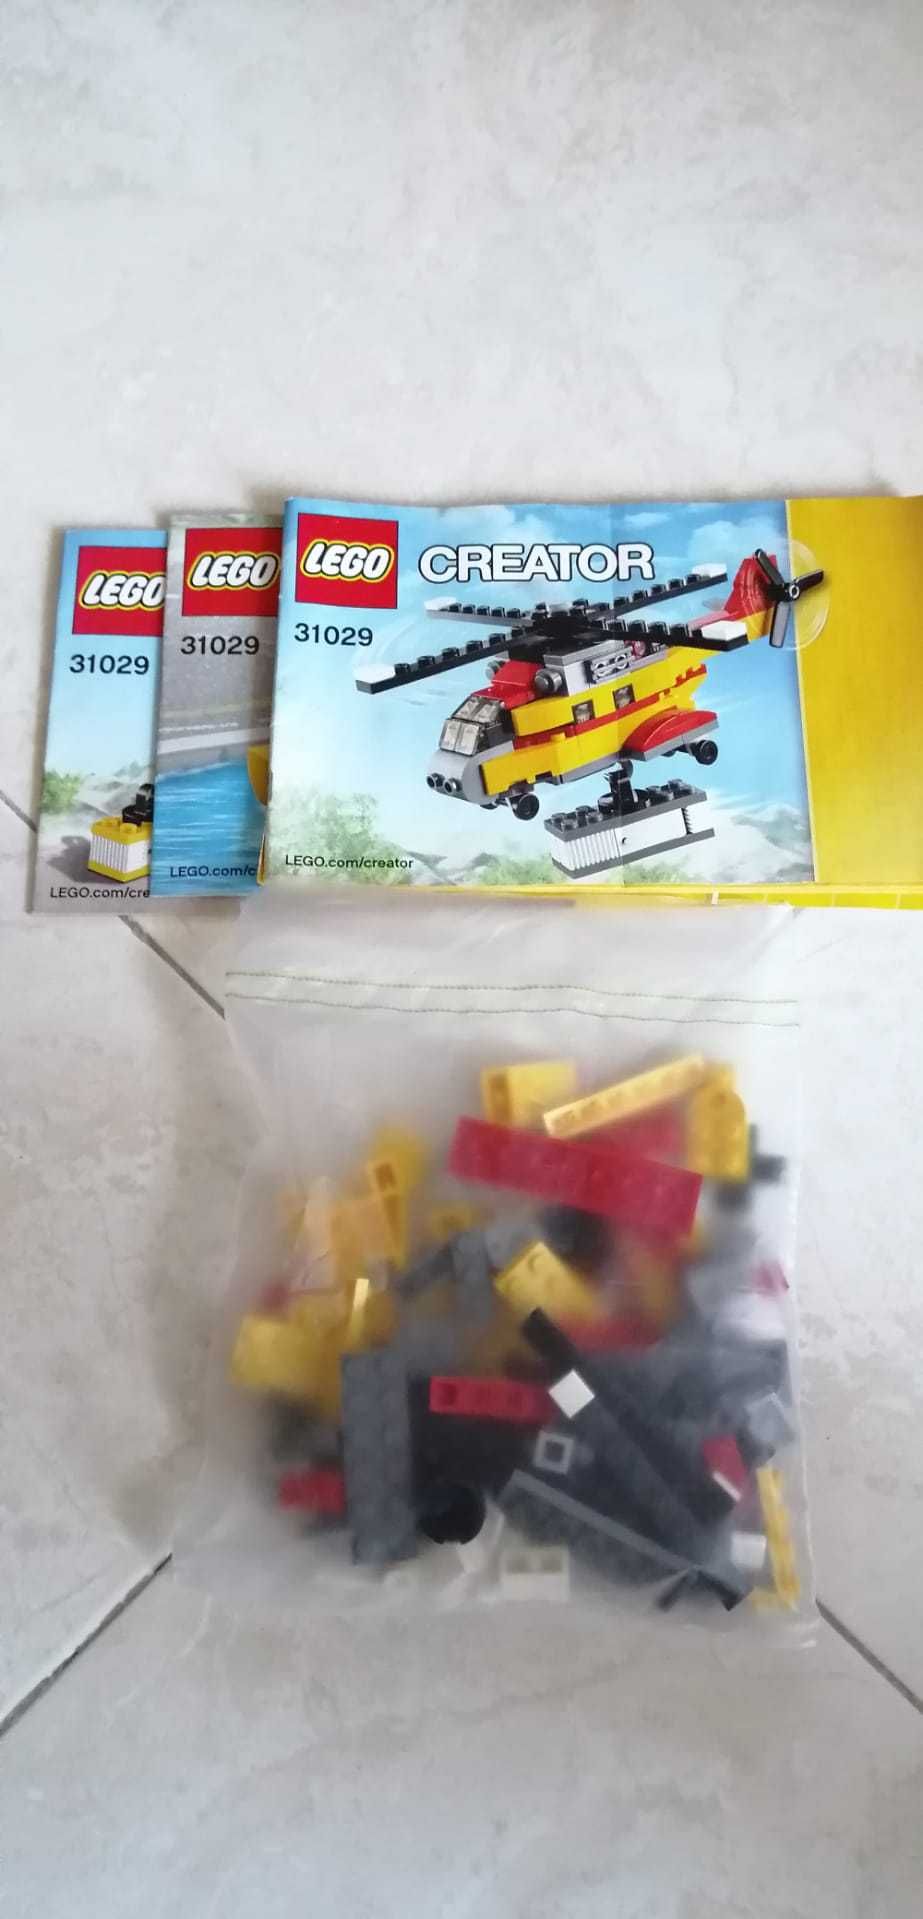 Lego Creator 31029 completo usado